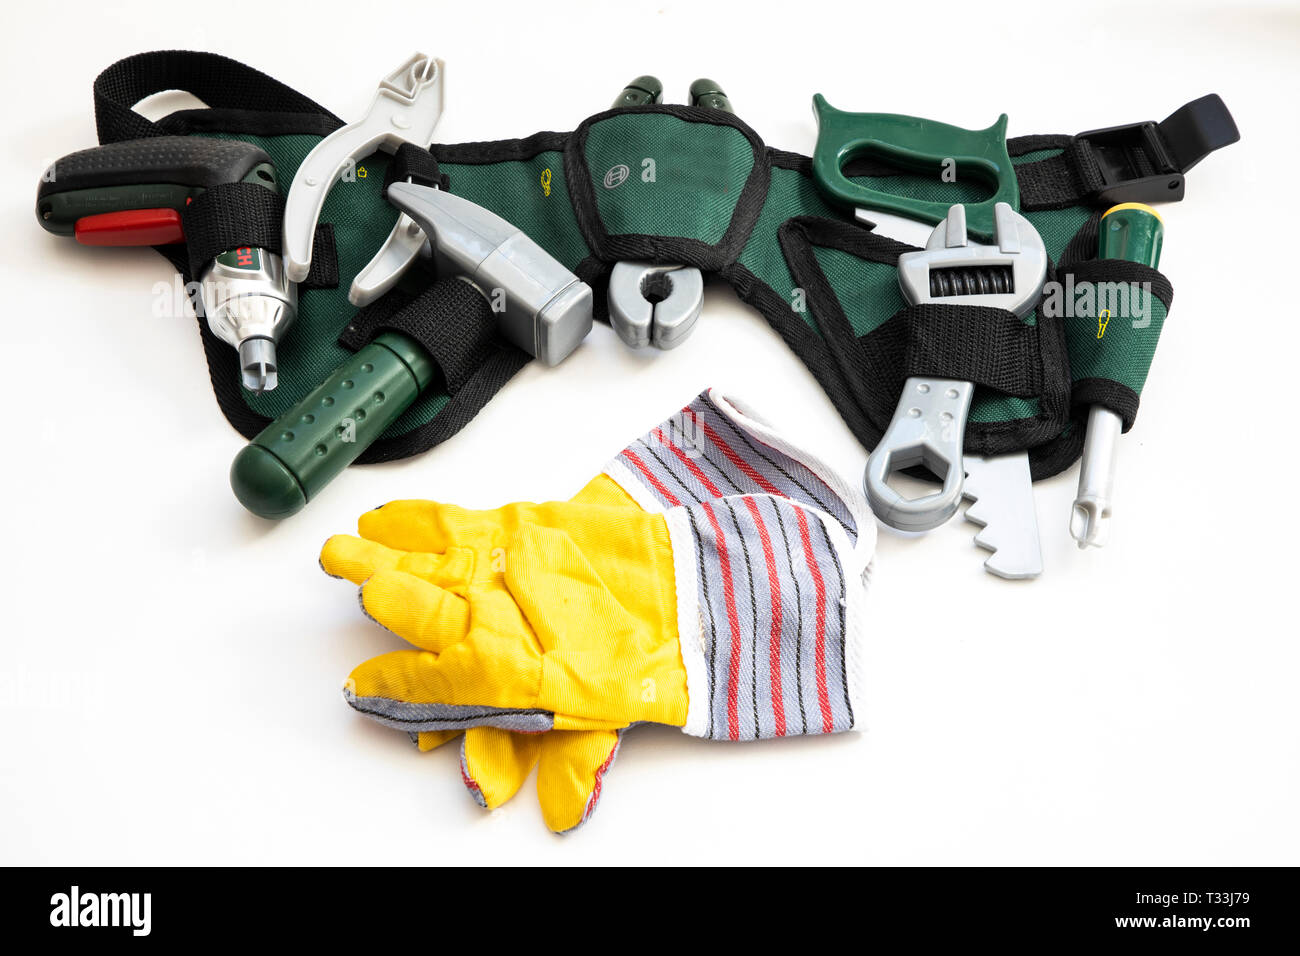 Spielzeug Werkzeug, Kunststoff, verschiedene Werkzeuge für Kinder,  Werkzeuggürtel Stockfotografie - Alamy